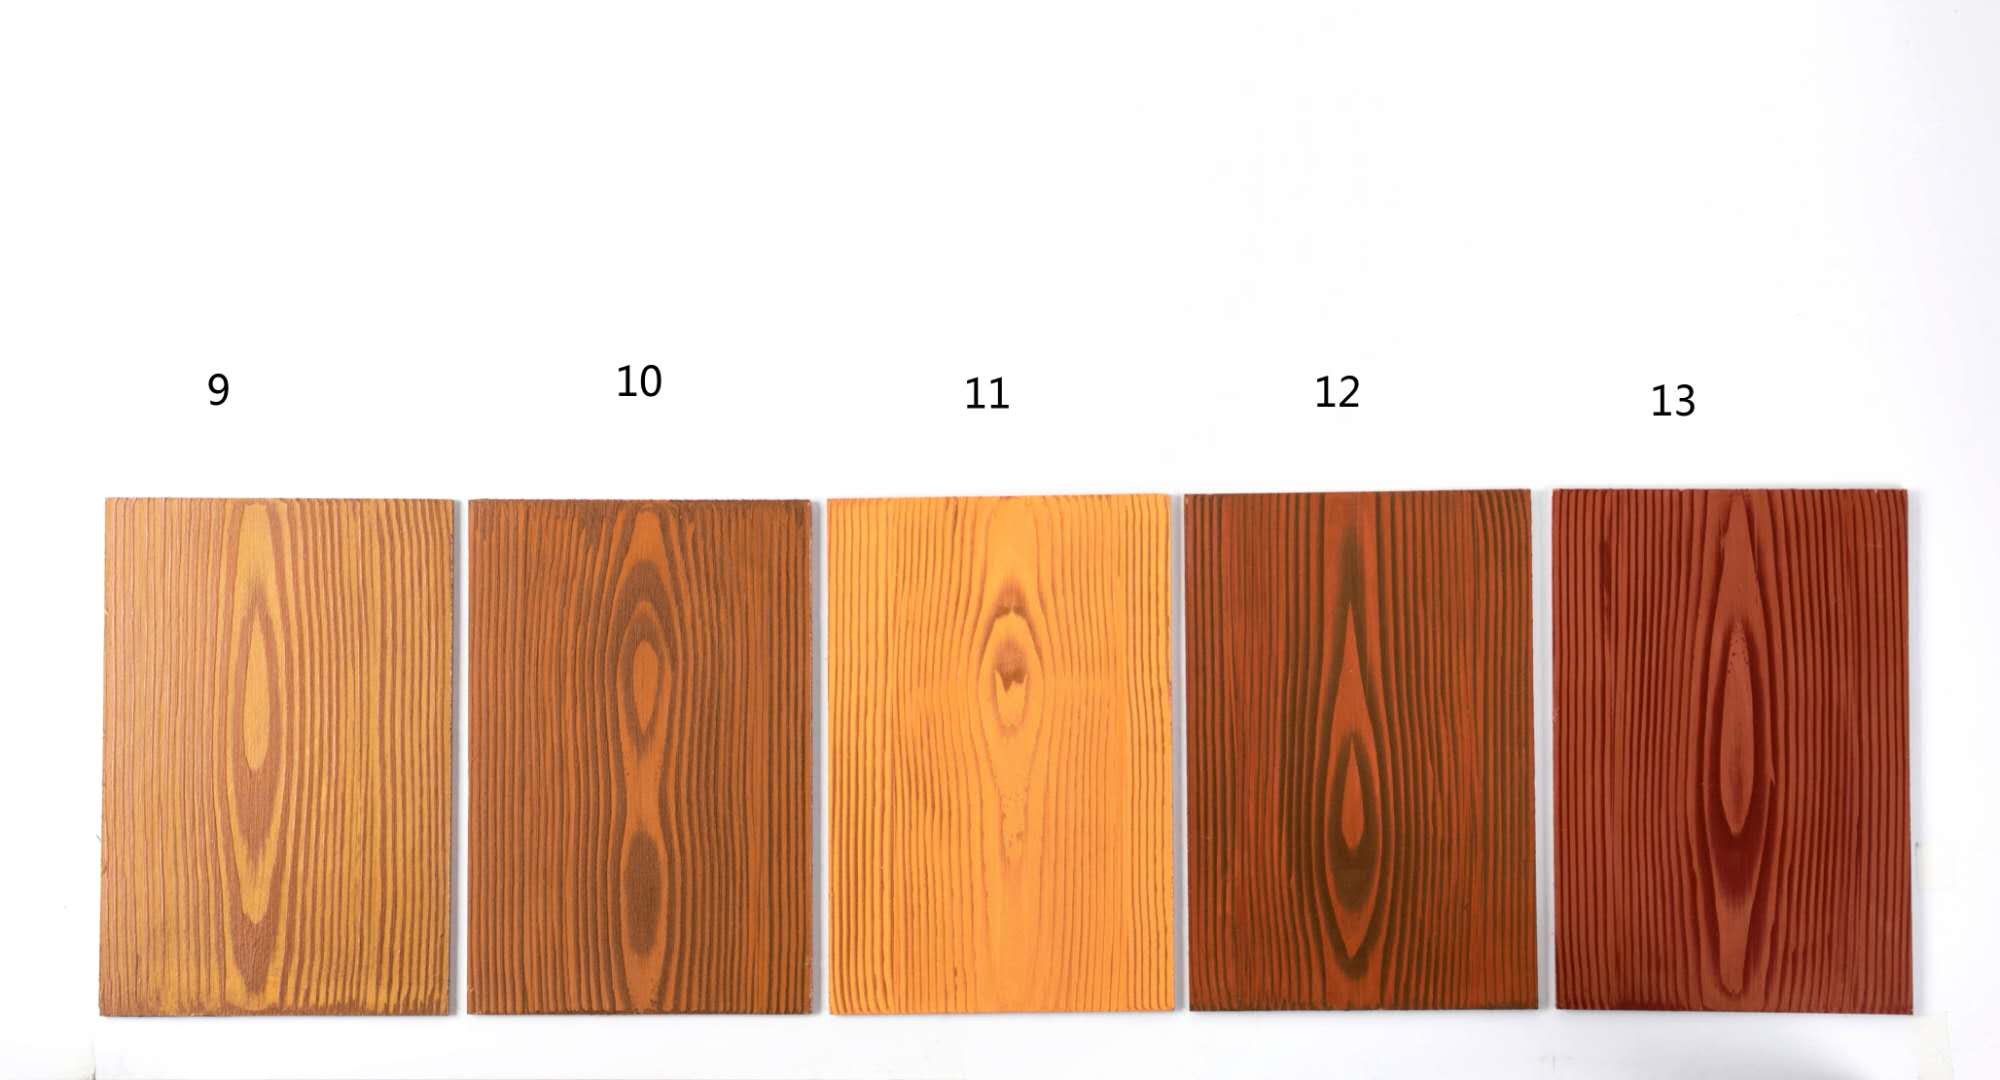 接着就是对木纹漆的木纹颜色选择,木纹漆的颜色效果是由木纹漆的底色